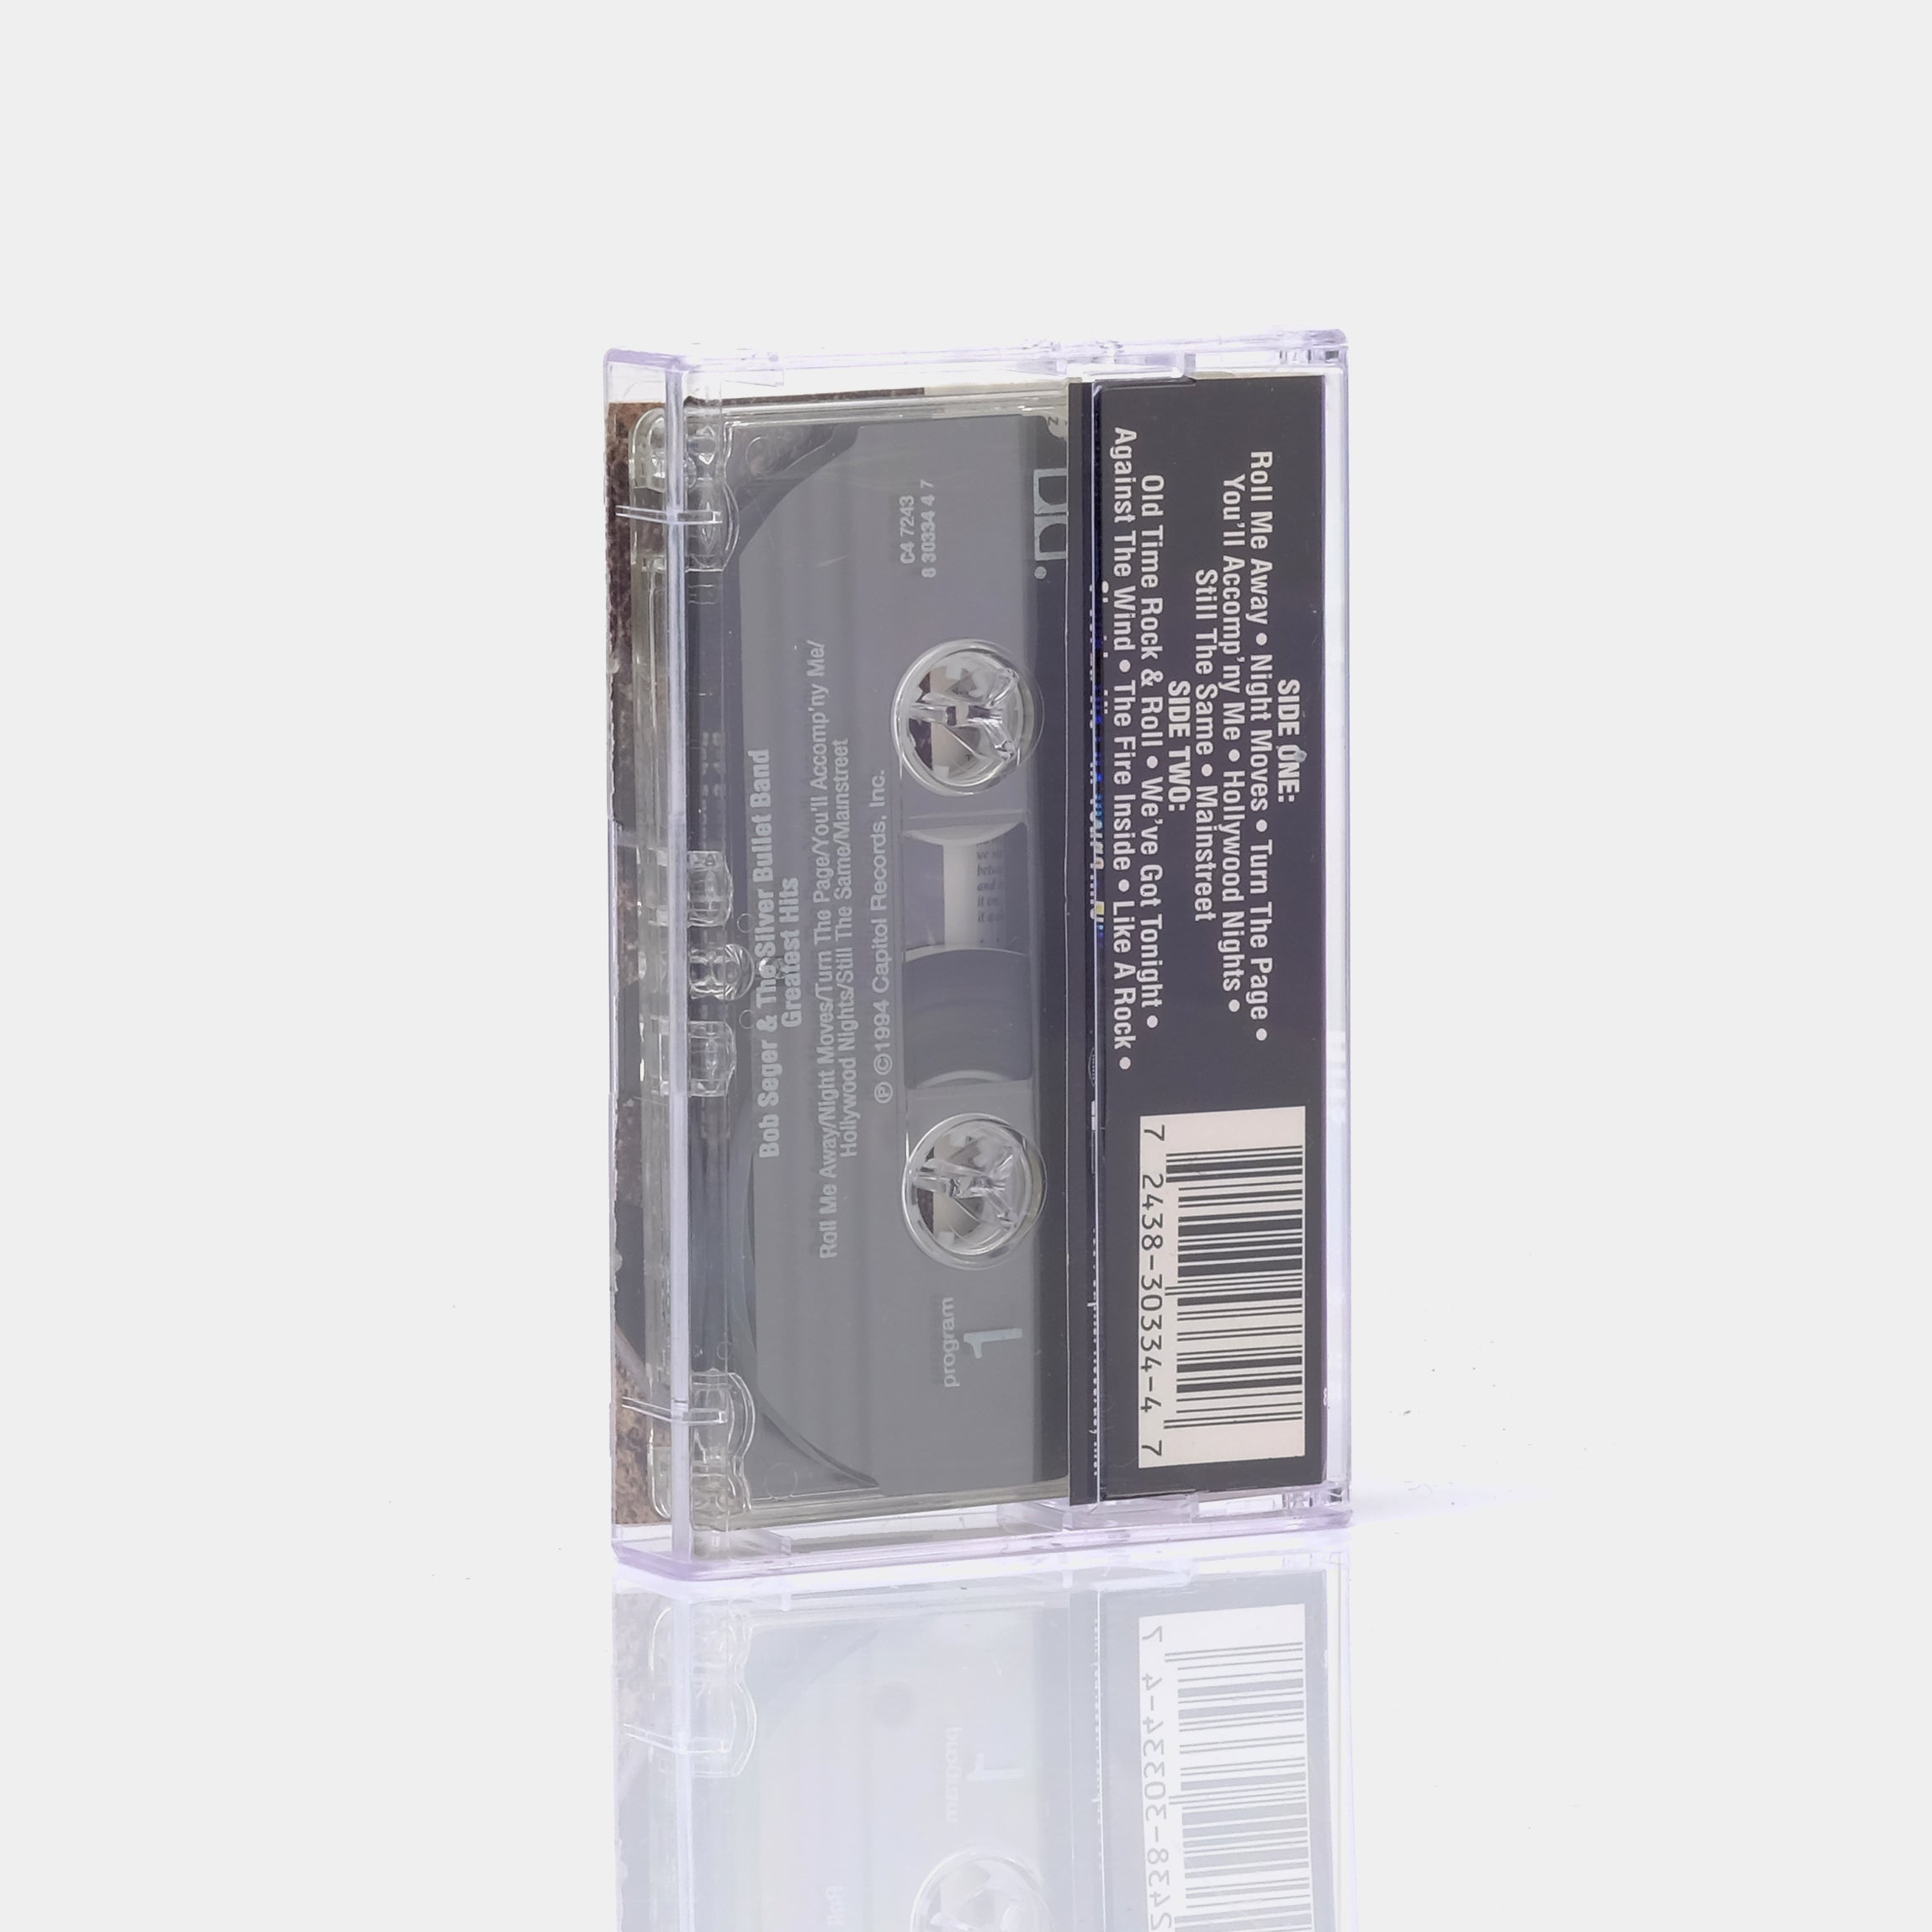 Bob Seger - Greatest Hits Cassette Tape